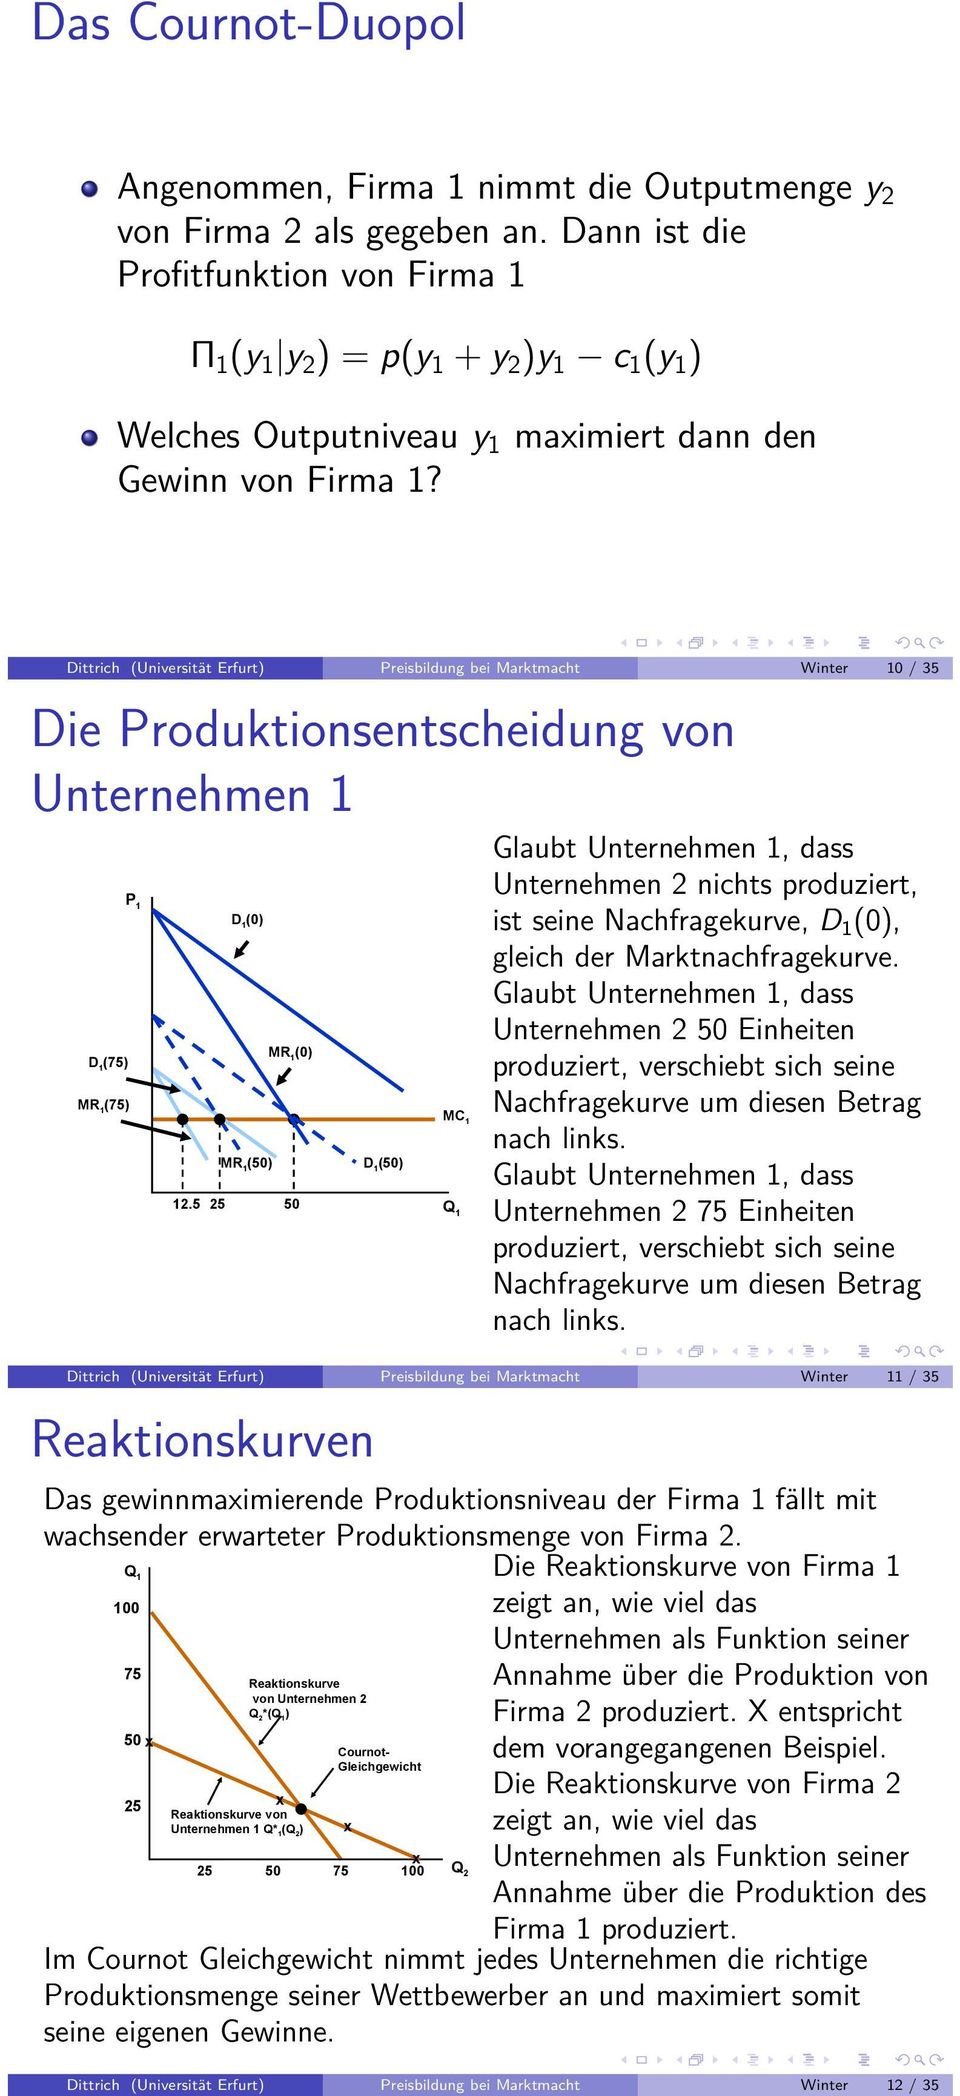 Dittrich (Universität Erfurt) Preisbildung bei Marktmacht Winter 10 / 35 Die Produktionsentscheidung von Unternehmen 1 D 1 (75) MR 1 (75) P 1 D 1 (0) MR 1 (50) MR 1 (0) D 1 (50) MC 1 12.